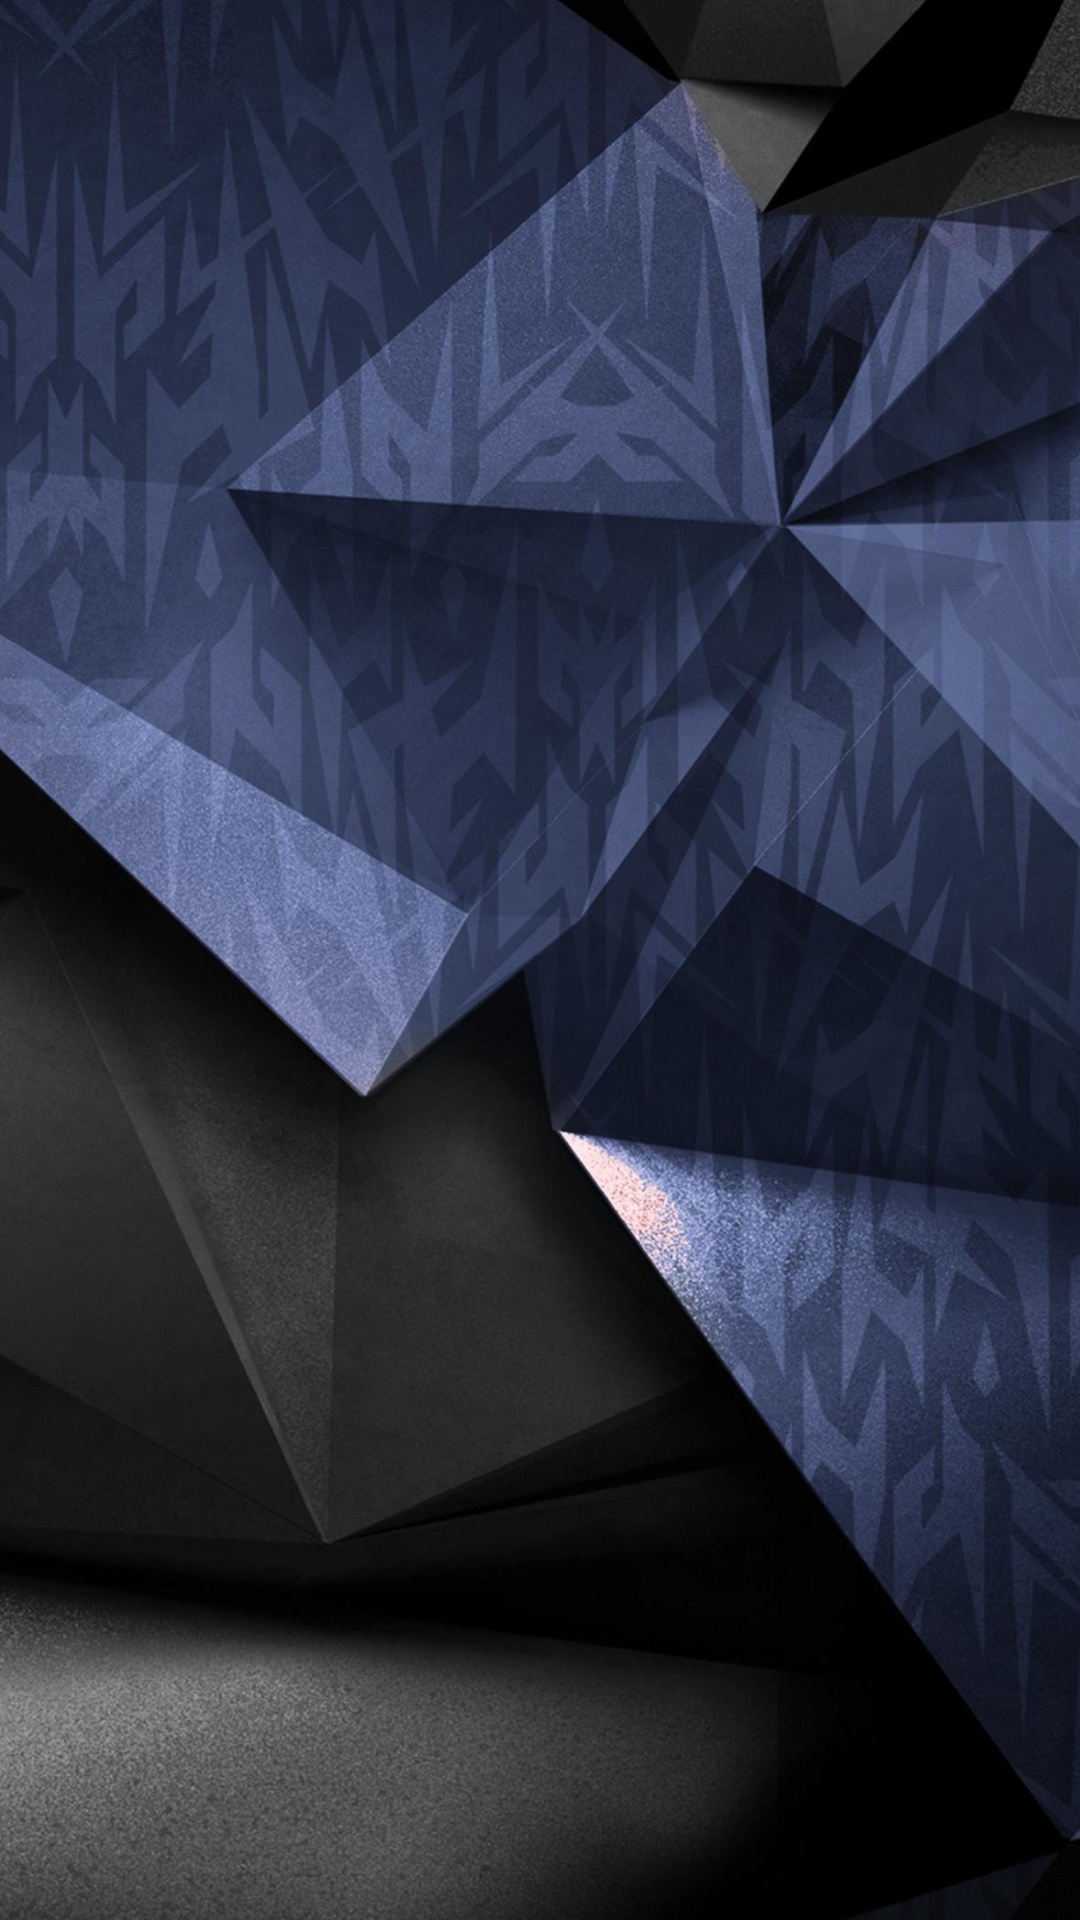 Art Abstrait Bleu et Noir. Wallpaper in 1080x1920 Resolution